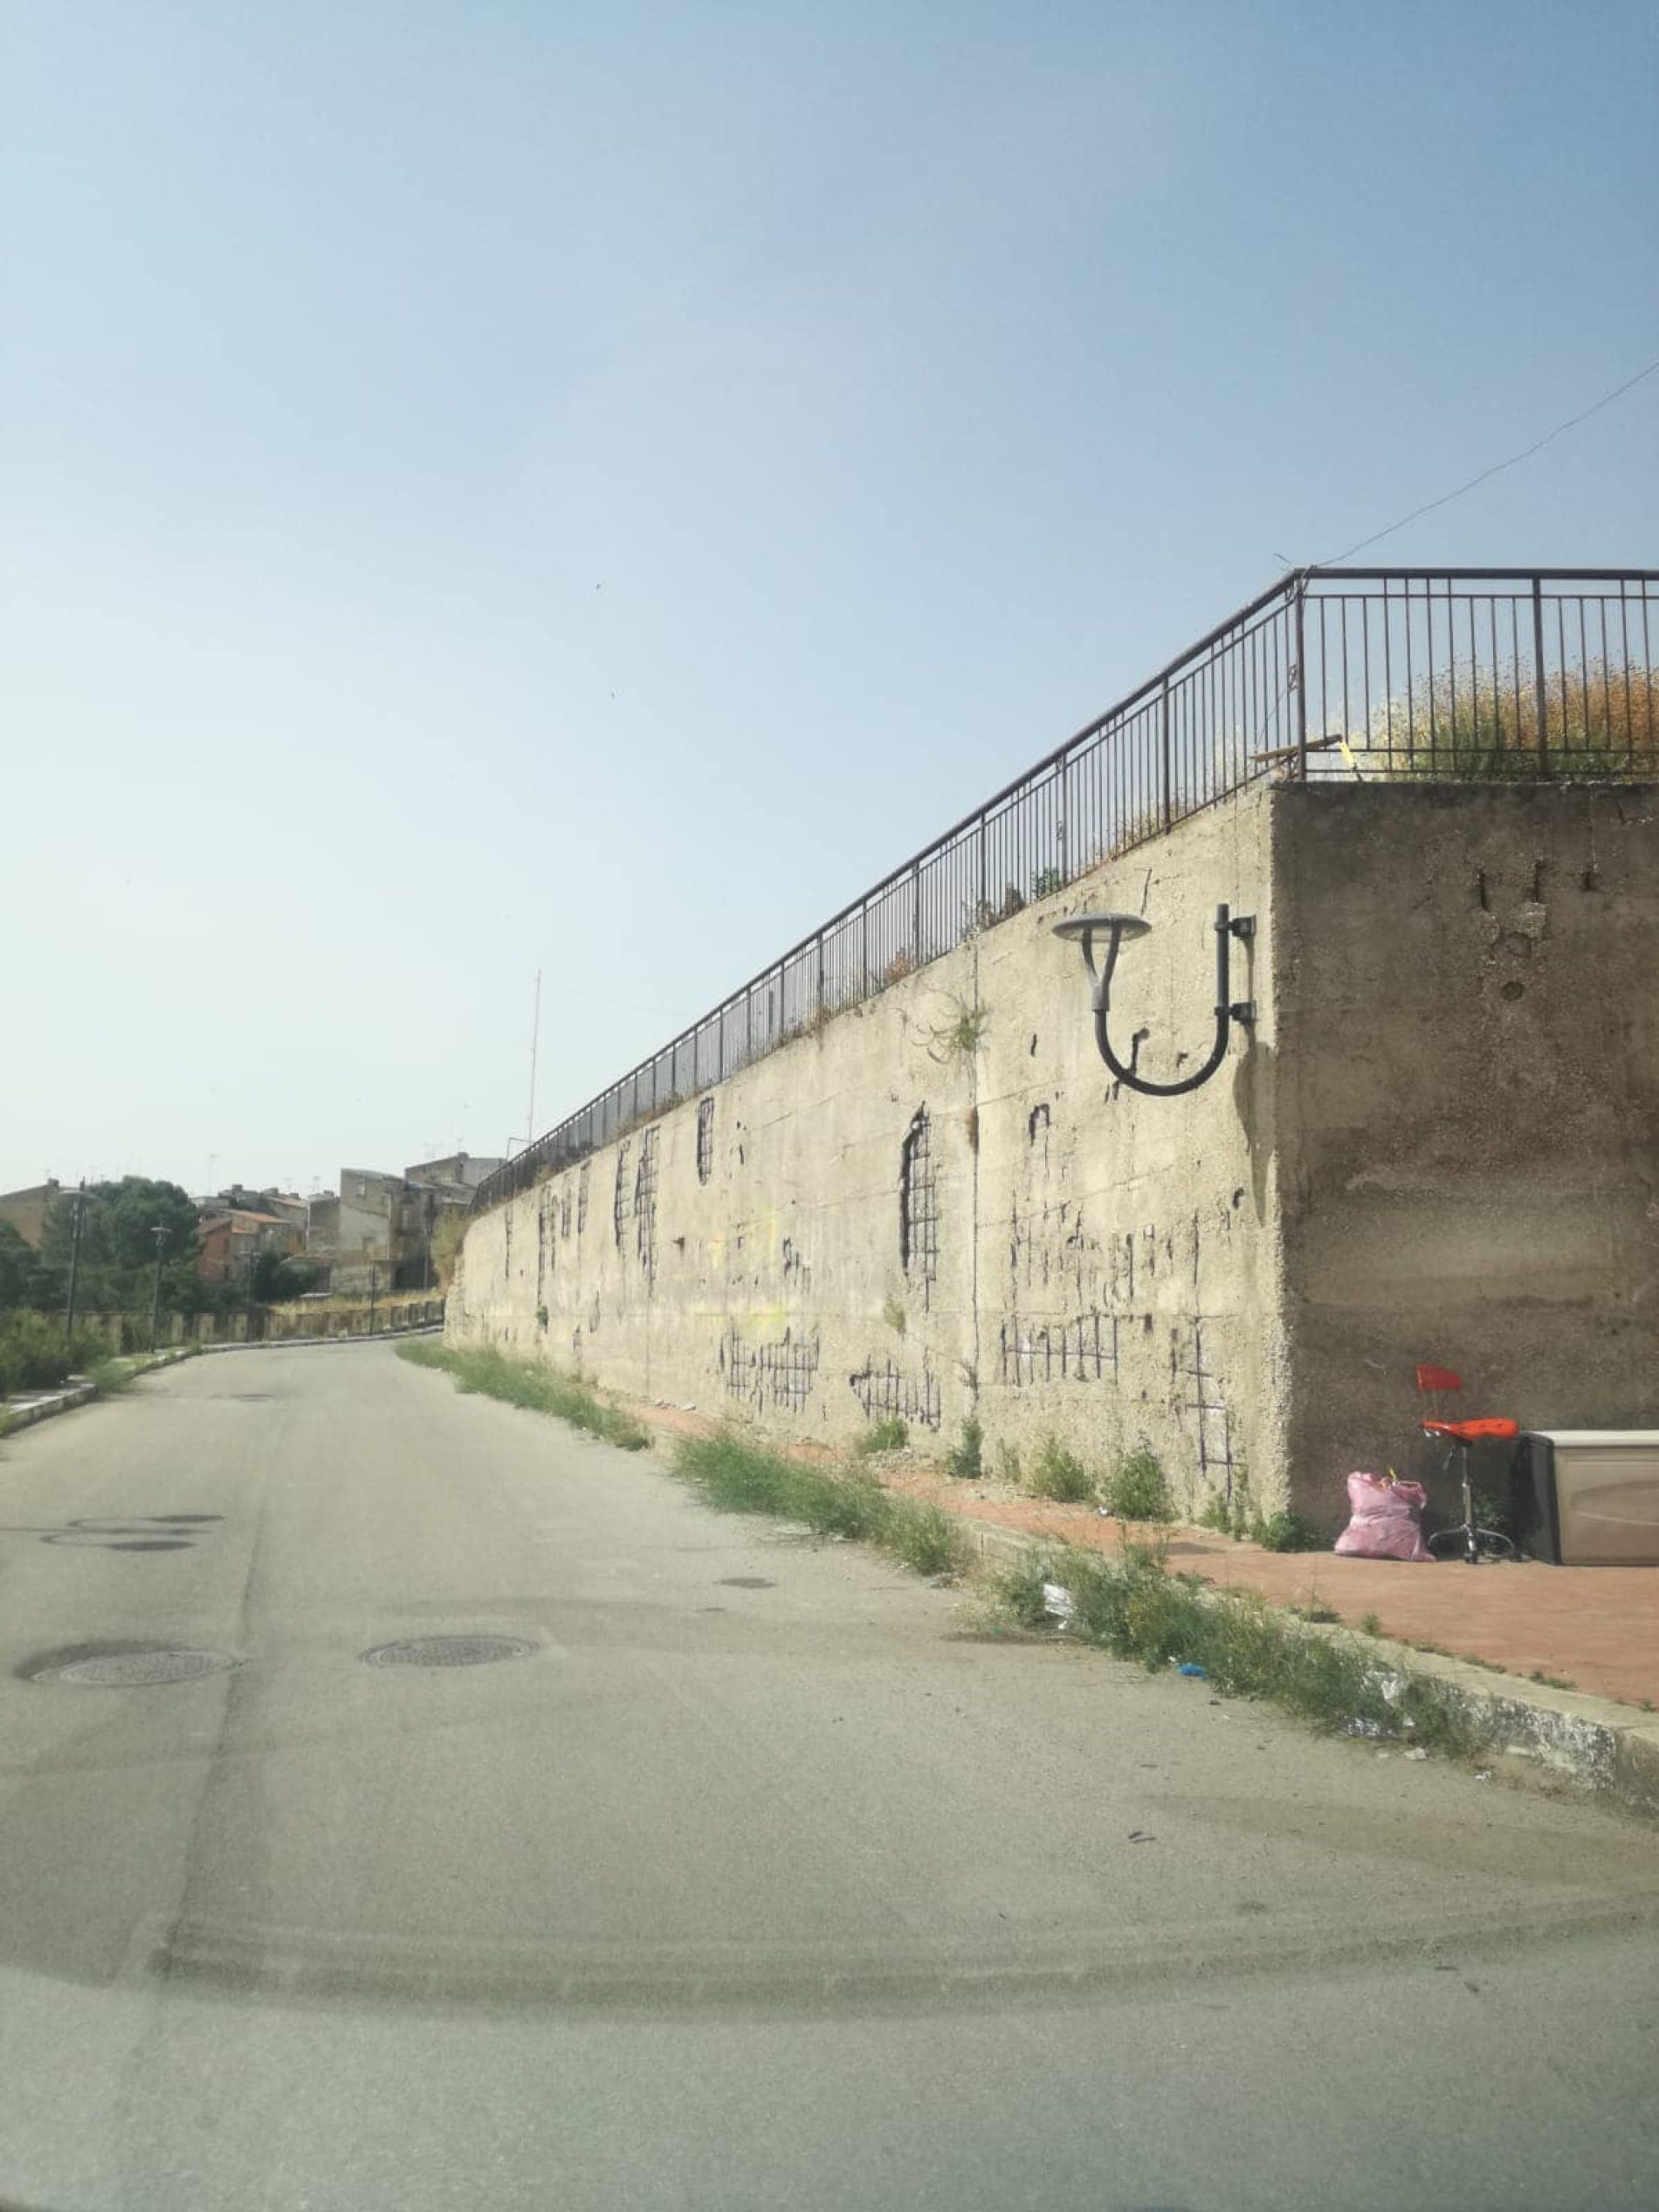 PIETRAPERZIA Rifacimento muro circonvallazione “Santa Lucia”.